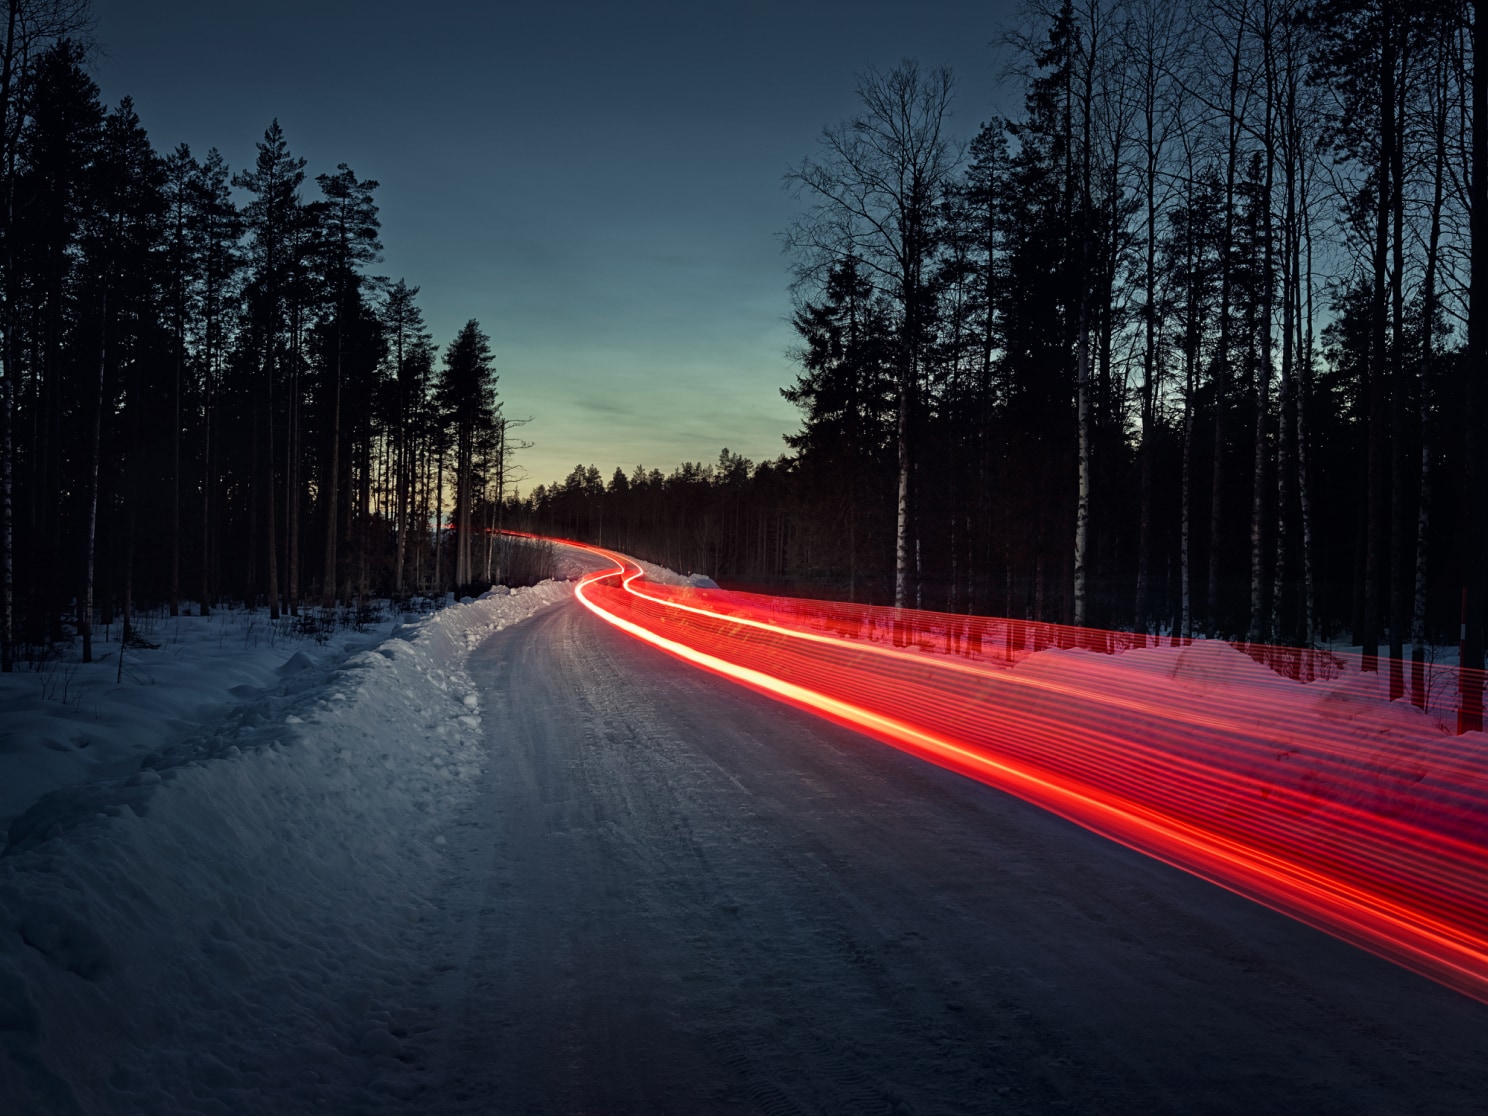 لقطة متأخرة لما يشبه مسار مصابيح خلفية الحمراء على طريق جليدي.